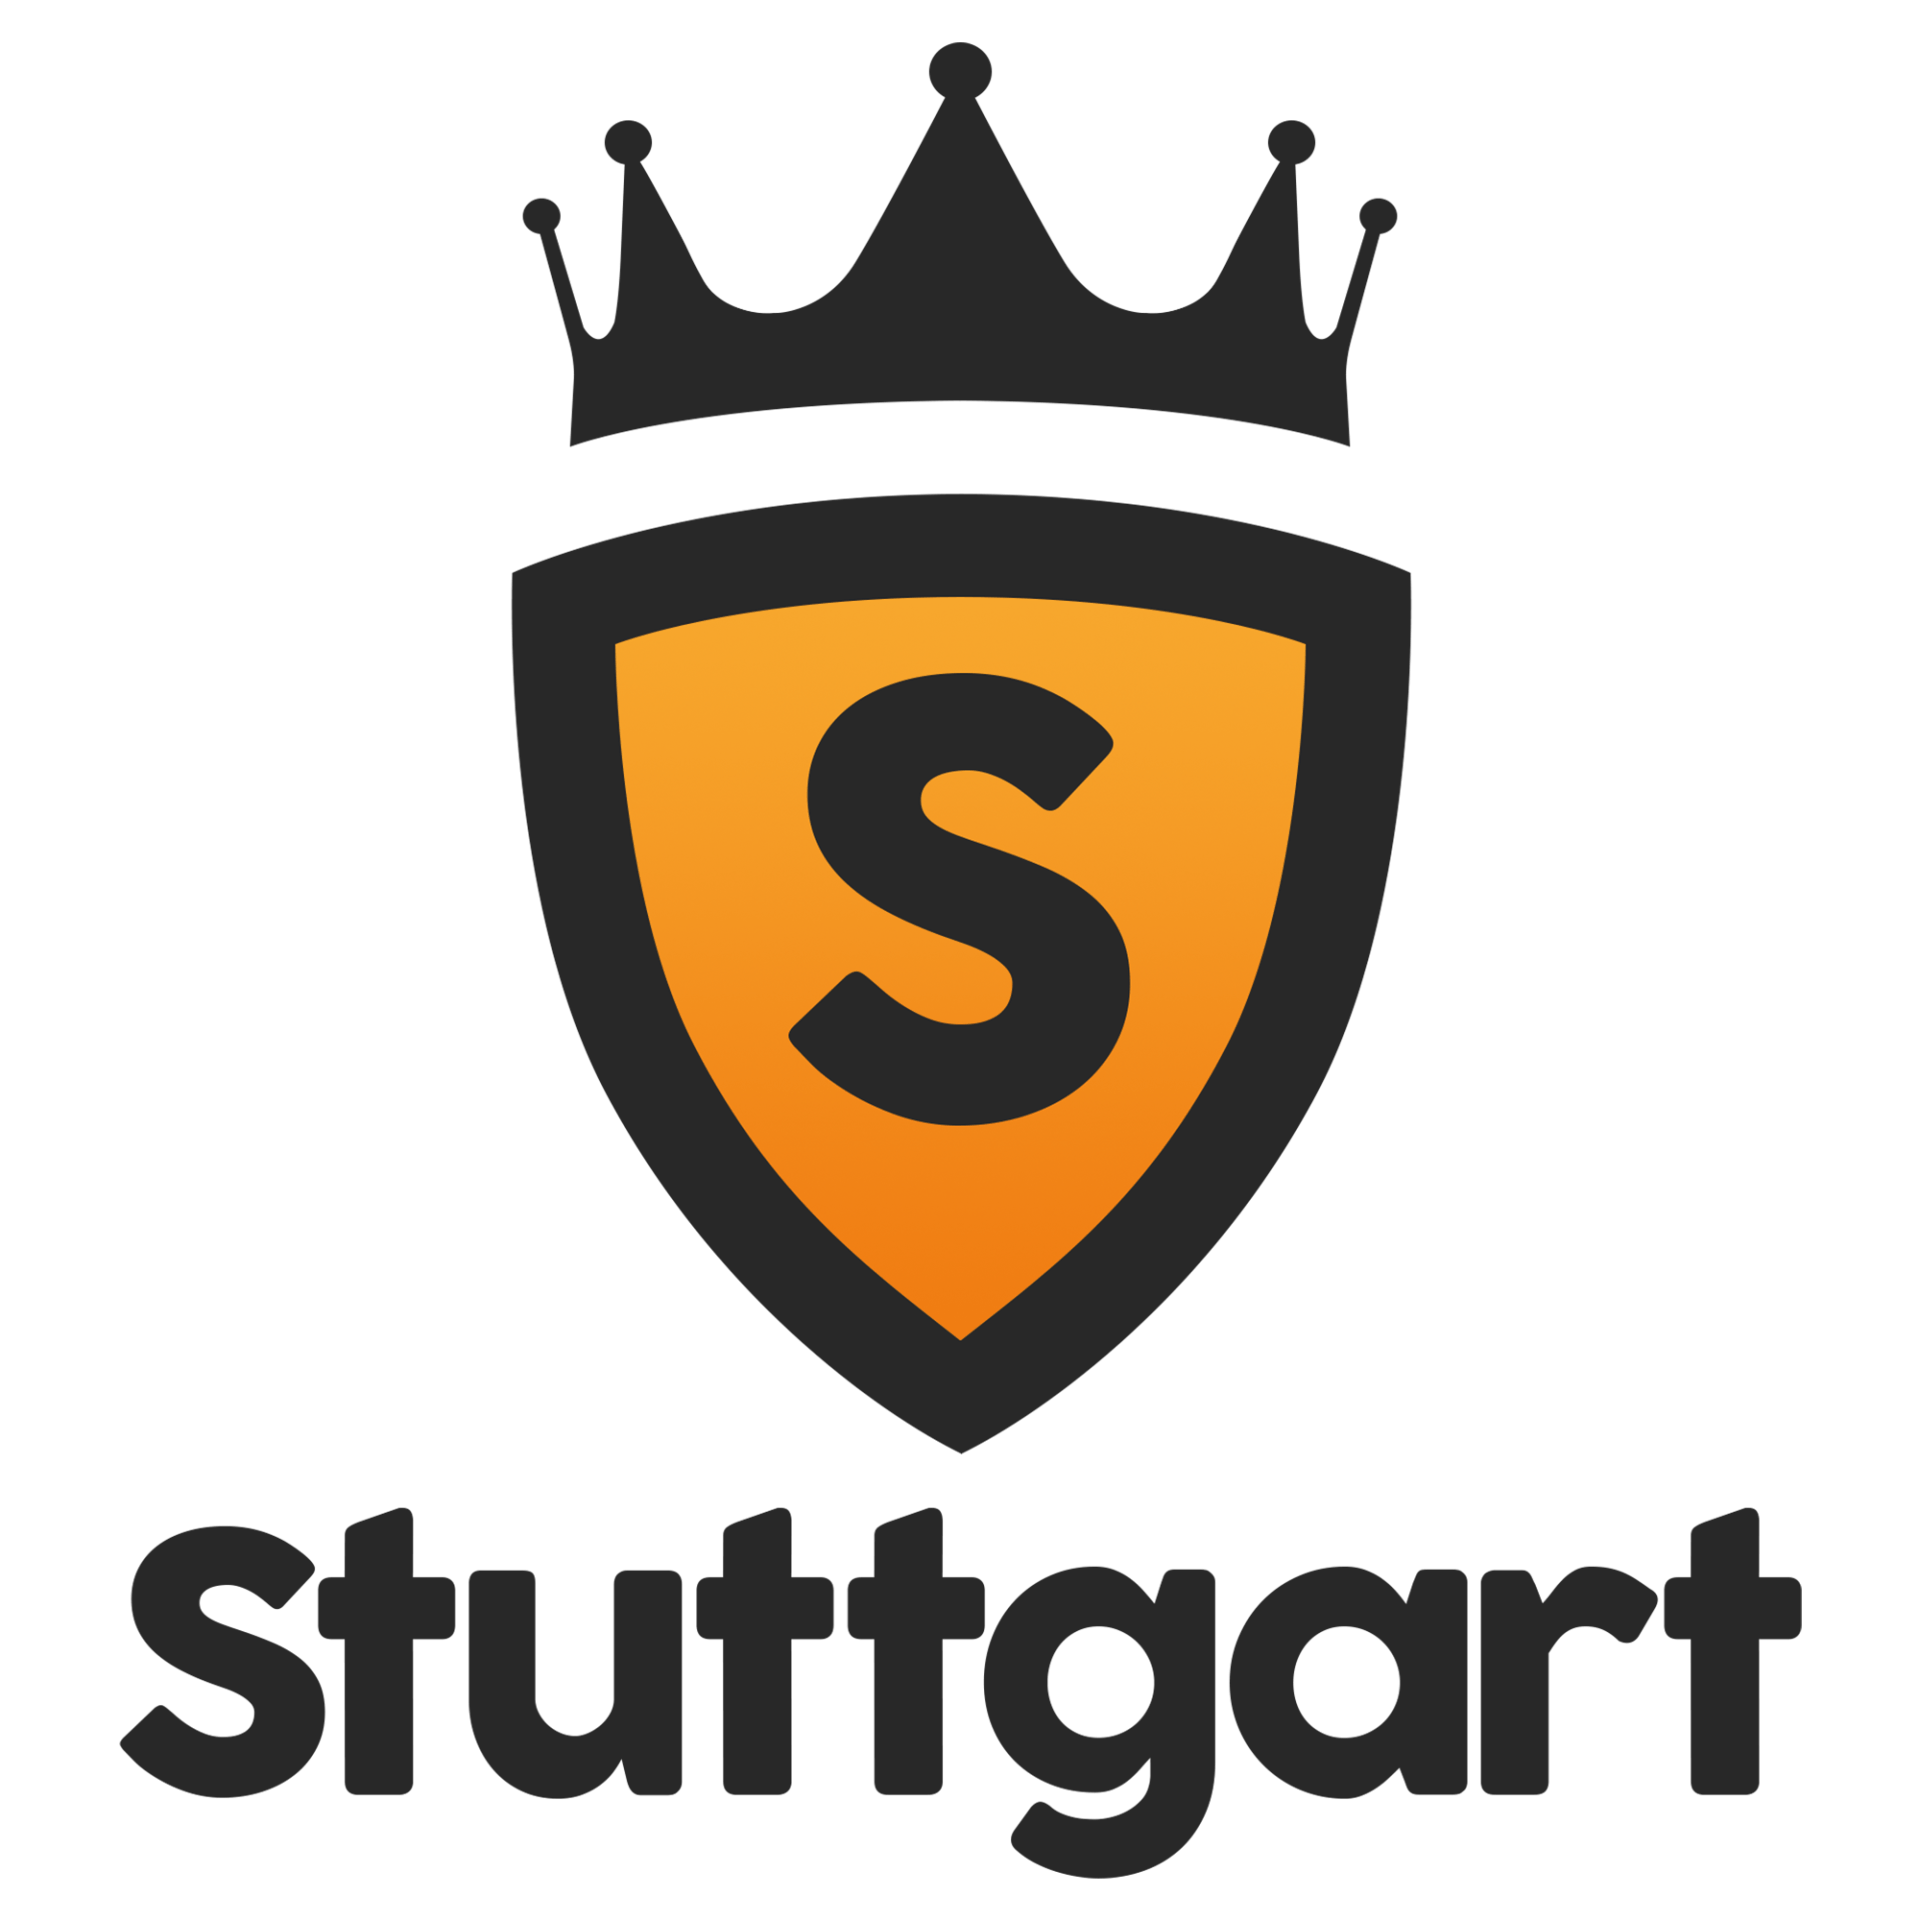 Stuttgard Logo